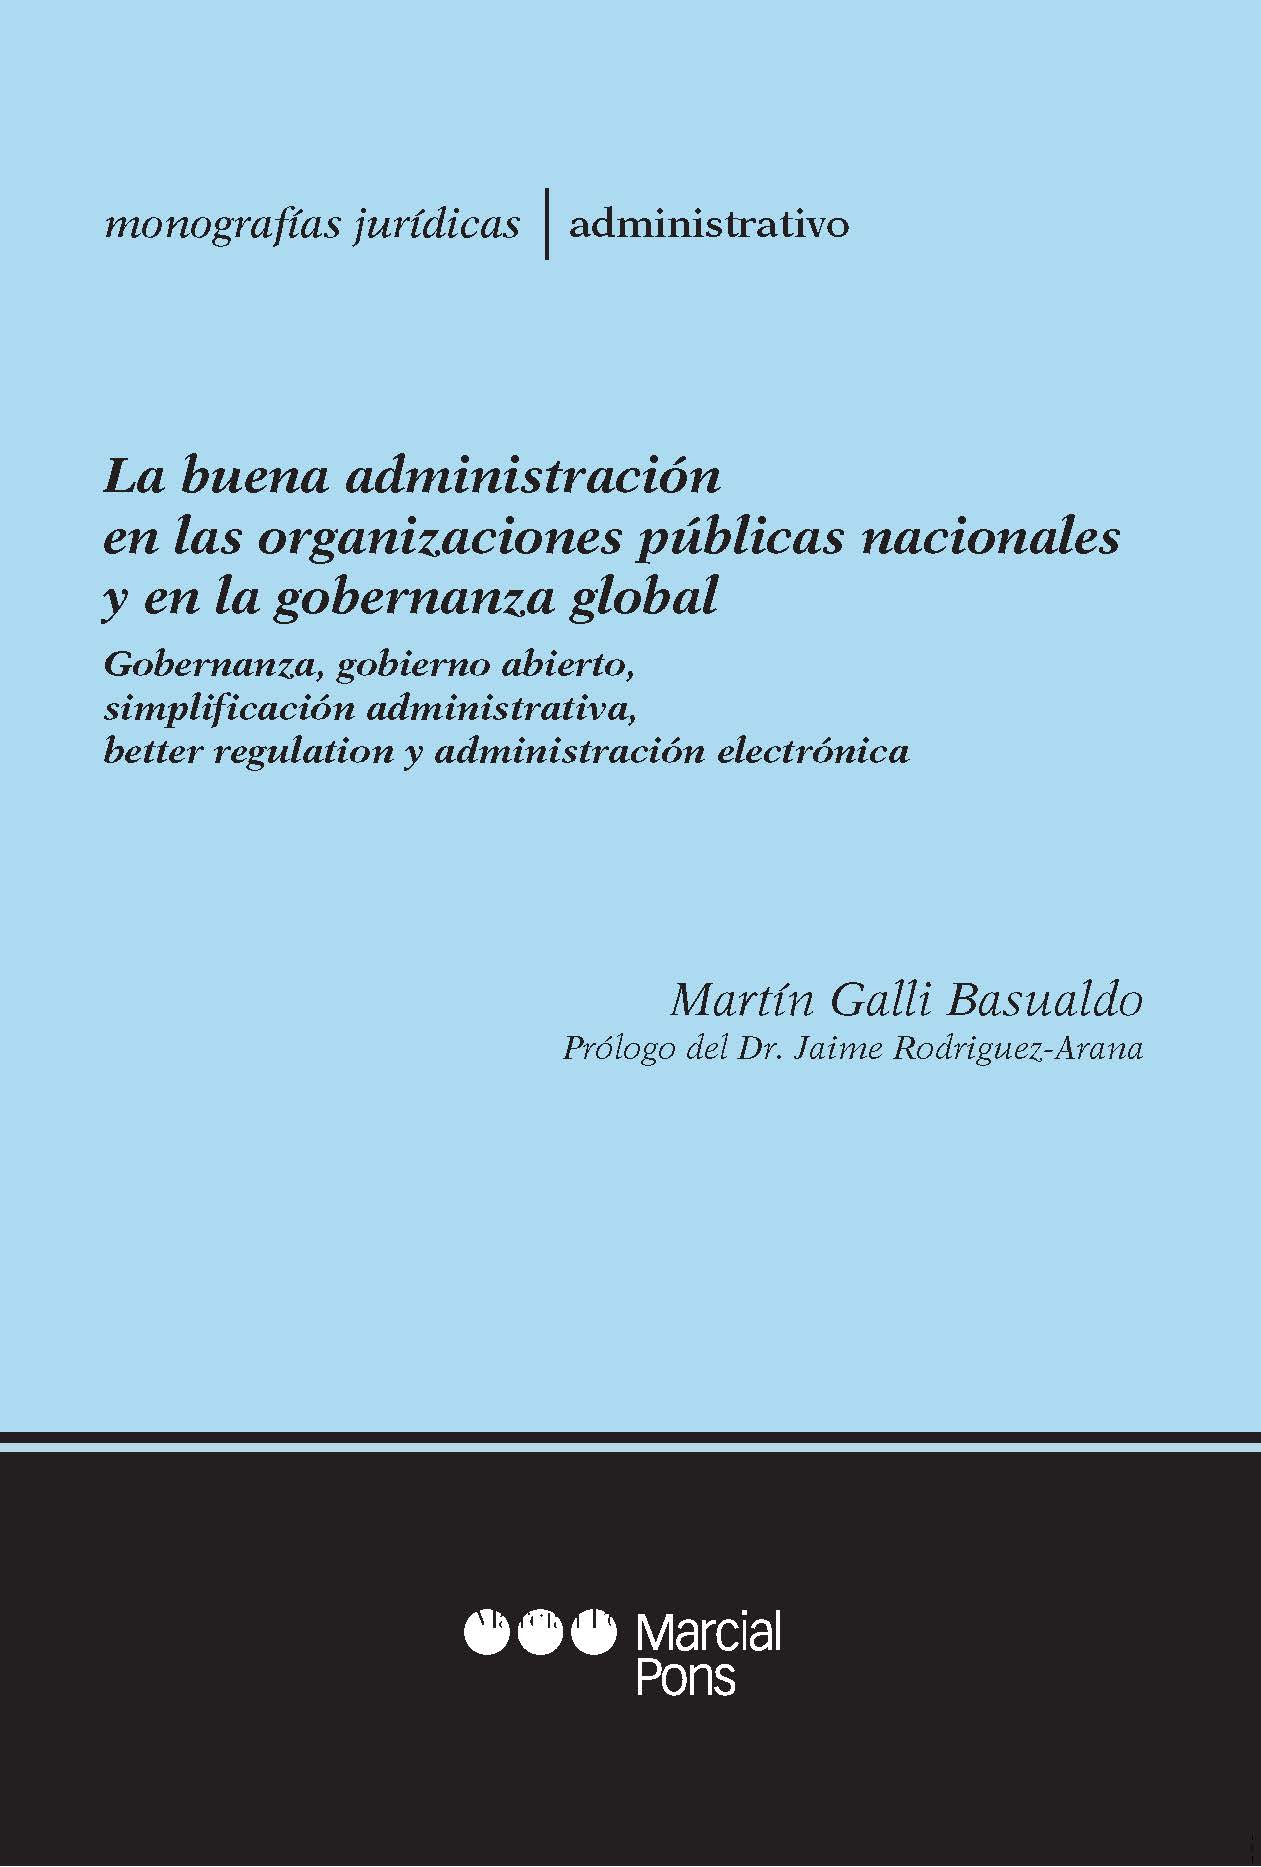 La buena administración en las organizaciones públicas nacionales y en la gobernanza global